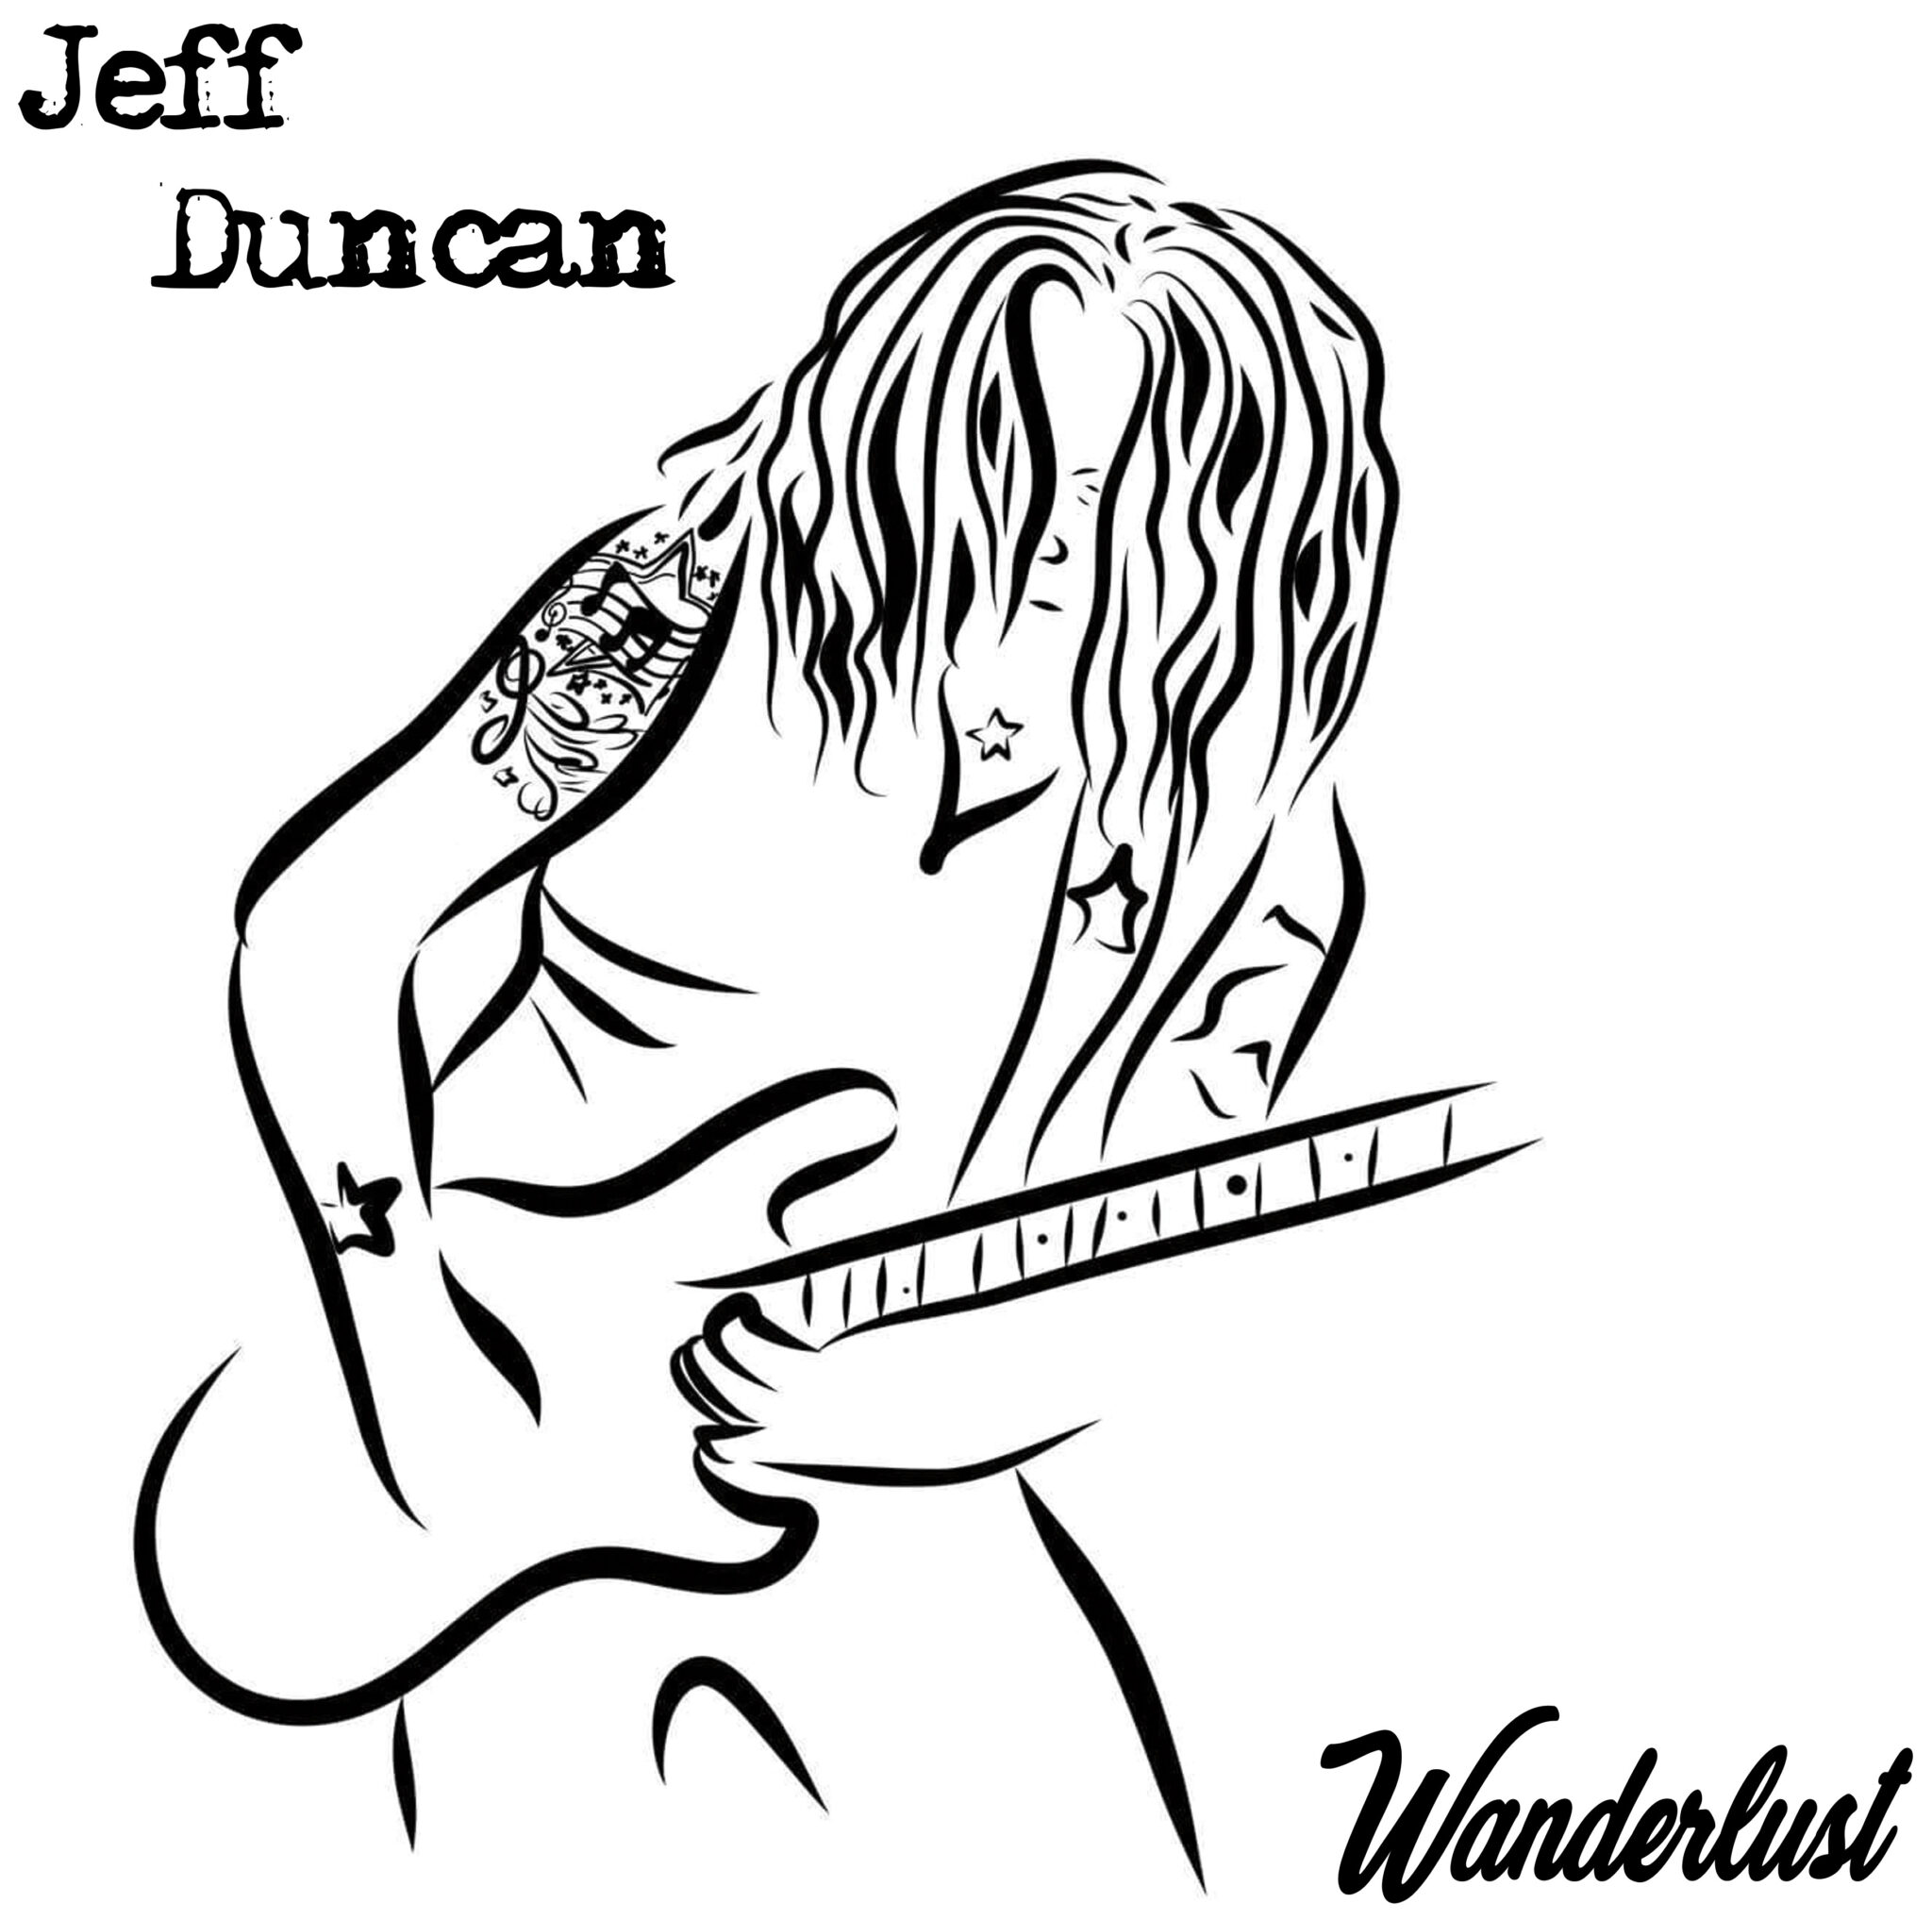 Jeff Duncan album